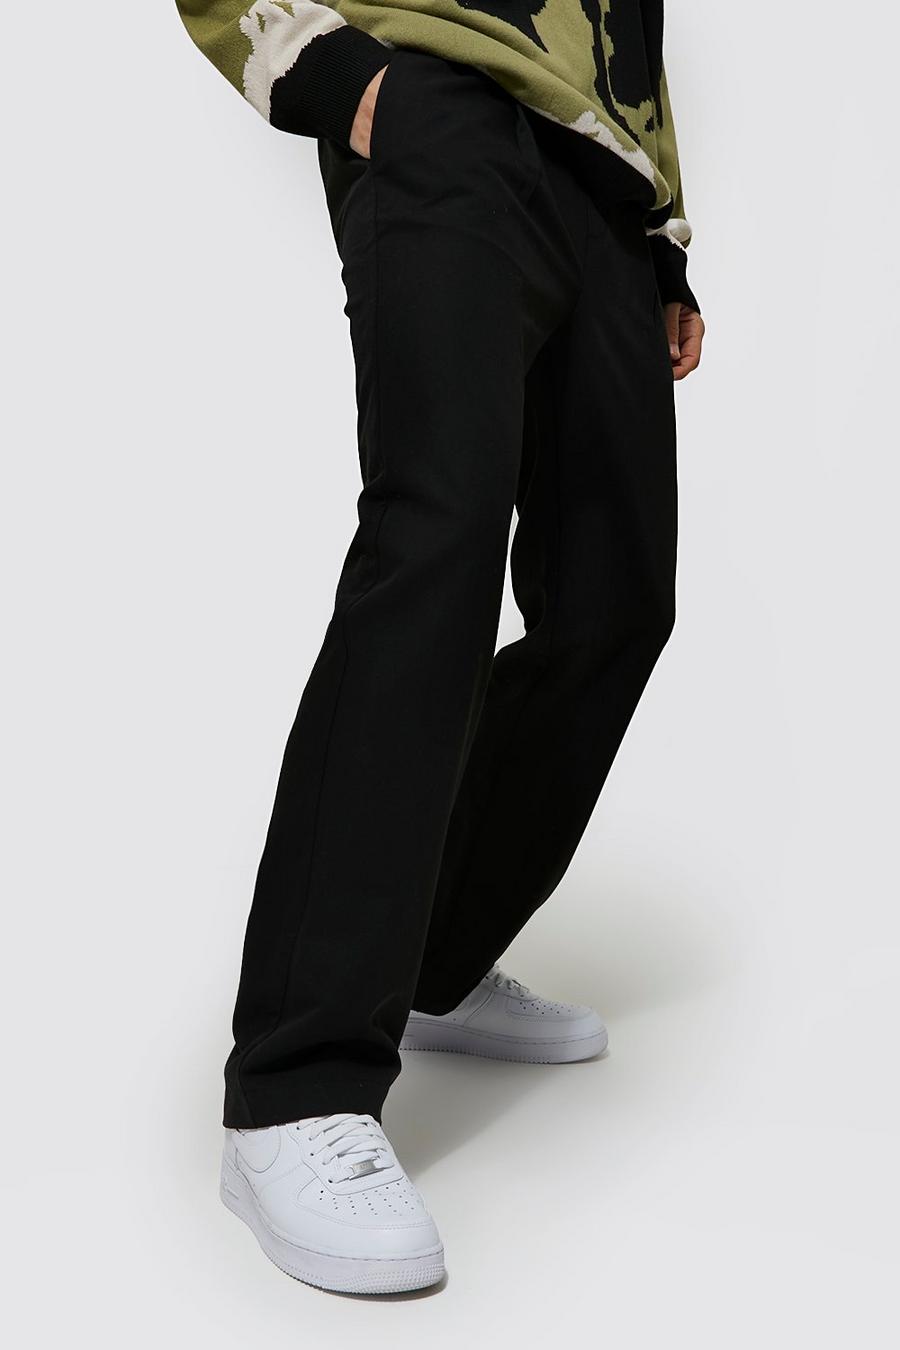 Pantalón deportivo holgado entallado con plisado frontal, Black nero